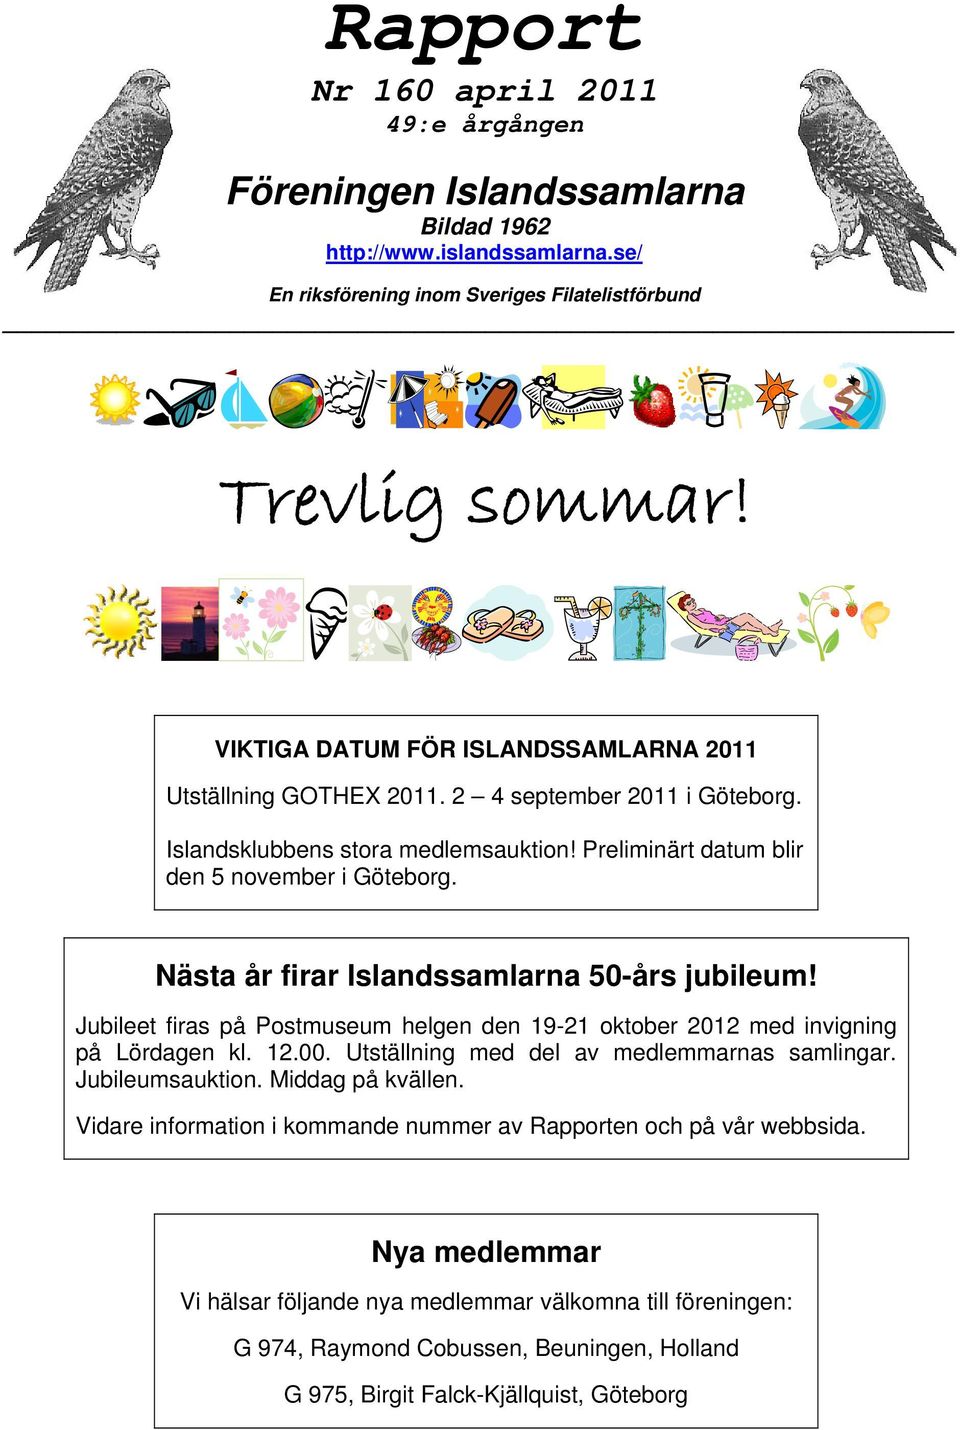 Nästa år firar Islandssamlarna 50-års jubileum! Jubileet firas på Postmuseum helgen den 19-21 oktober 2012 med invigning på Lördagen kl. 12.00. Utställning med del av medlemmarnas samlingar.